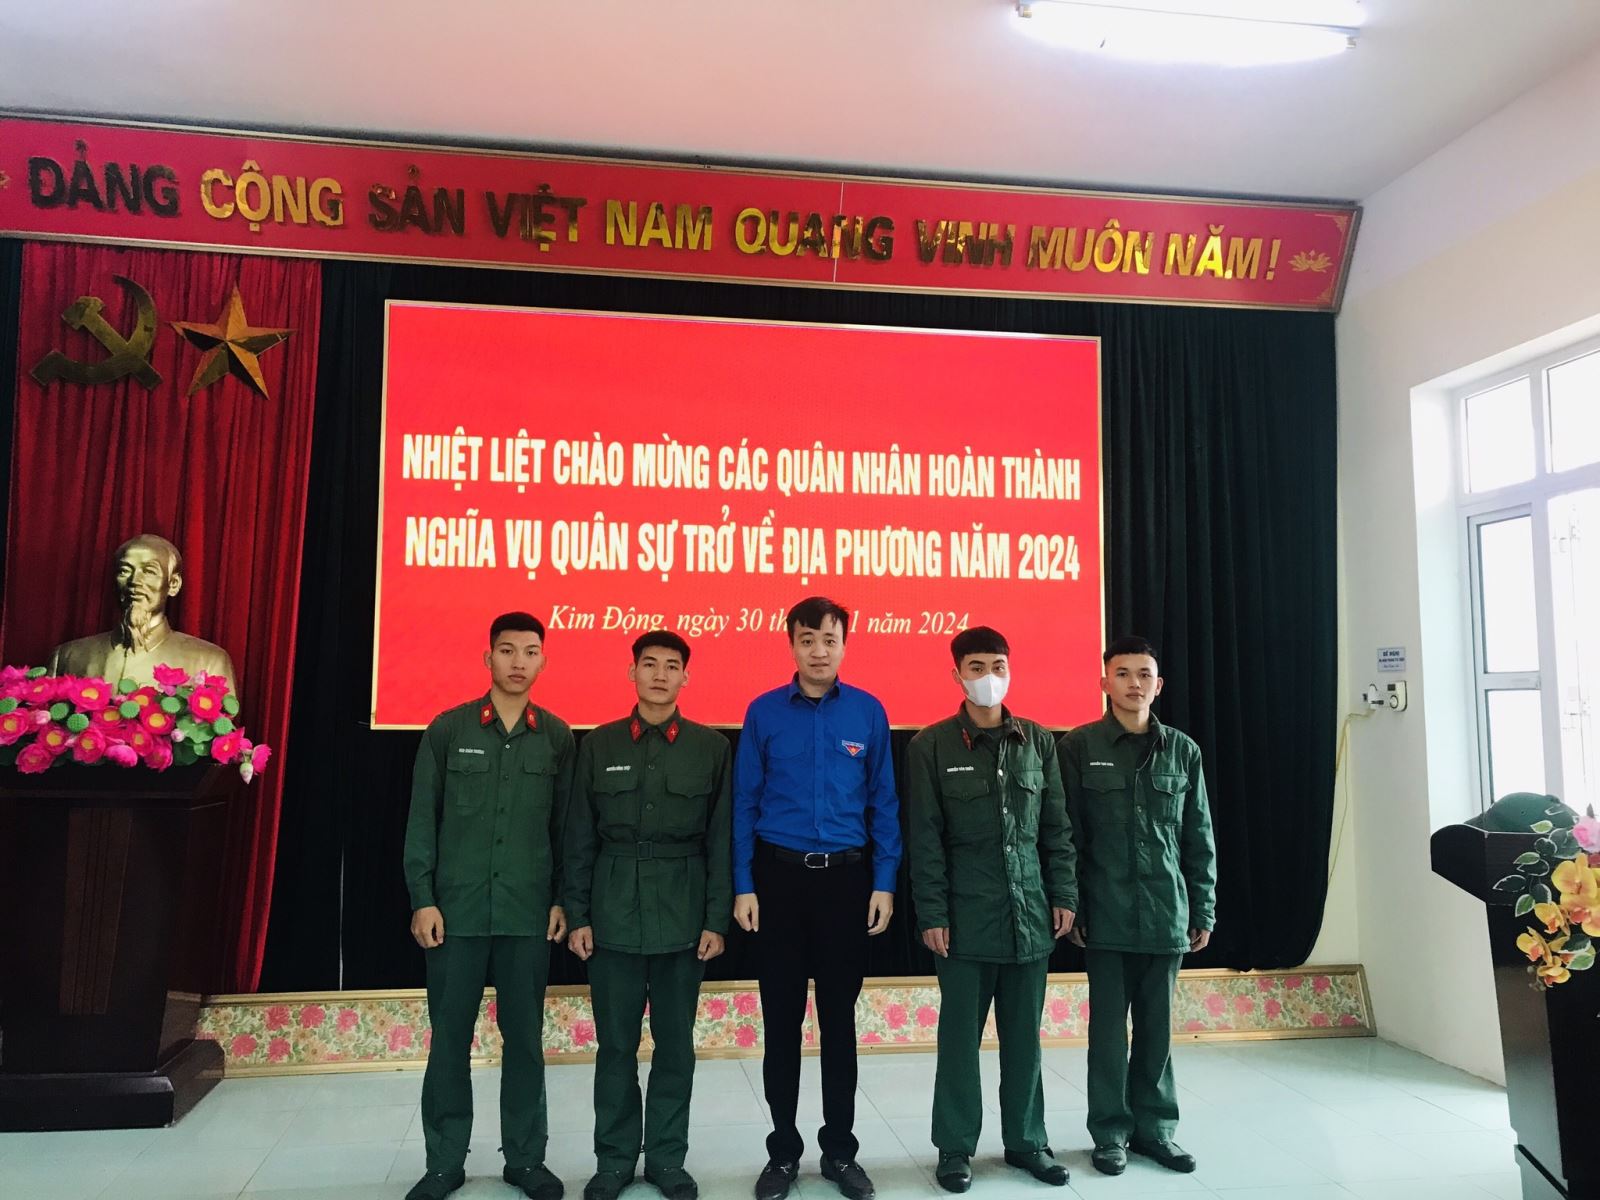 Huyện Kim Động: Tổ chức chào mừng quân nhân hoàn thành nghĩa vụ quân sự tại ngũ trở về địa phương năm 2024